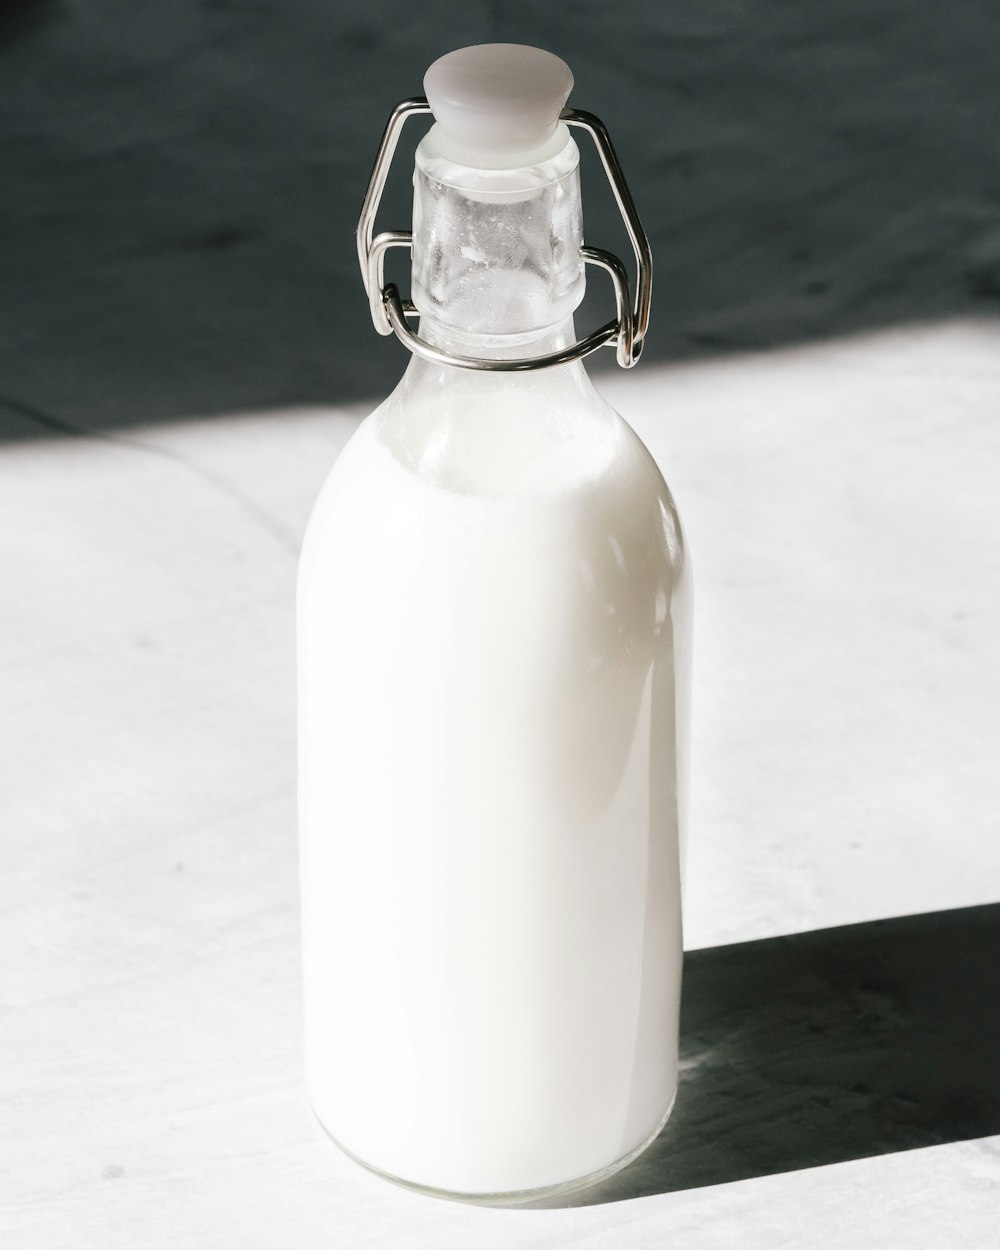 투명한 유리병에 담긴 우유